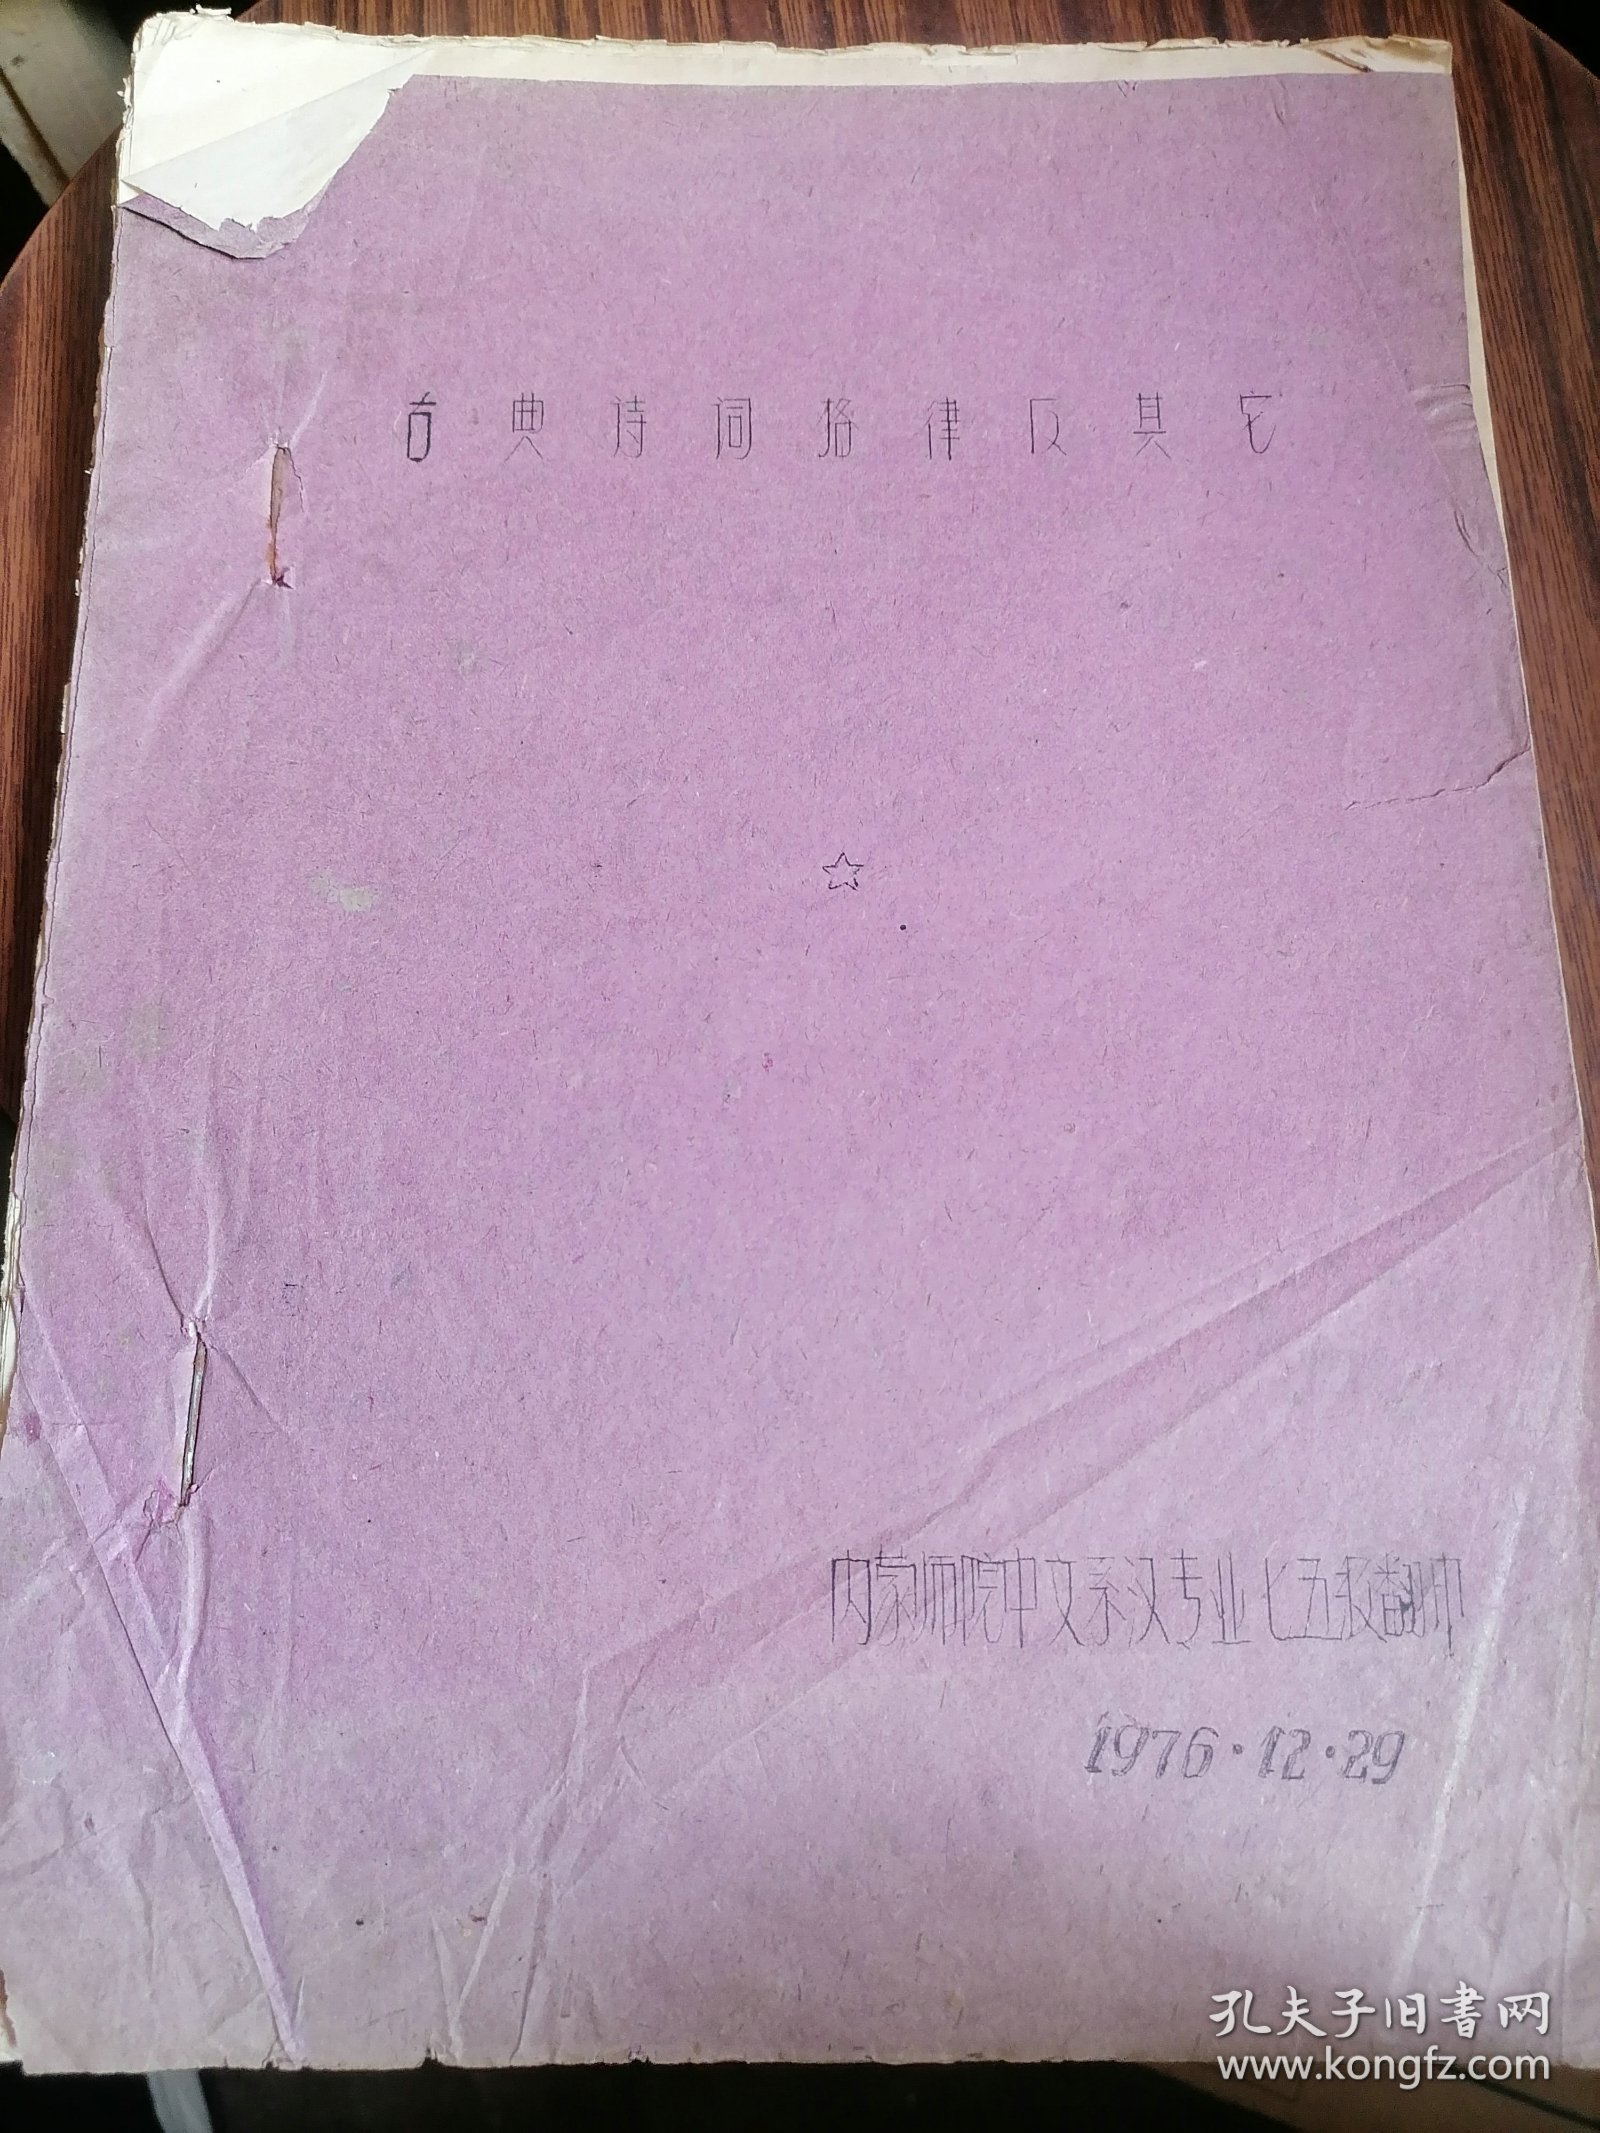 古典诗词格律及其它-内蒙师院中文糸-1976年108页